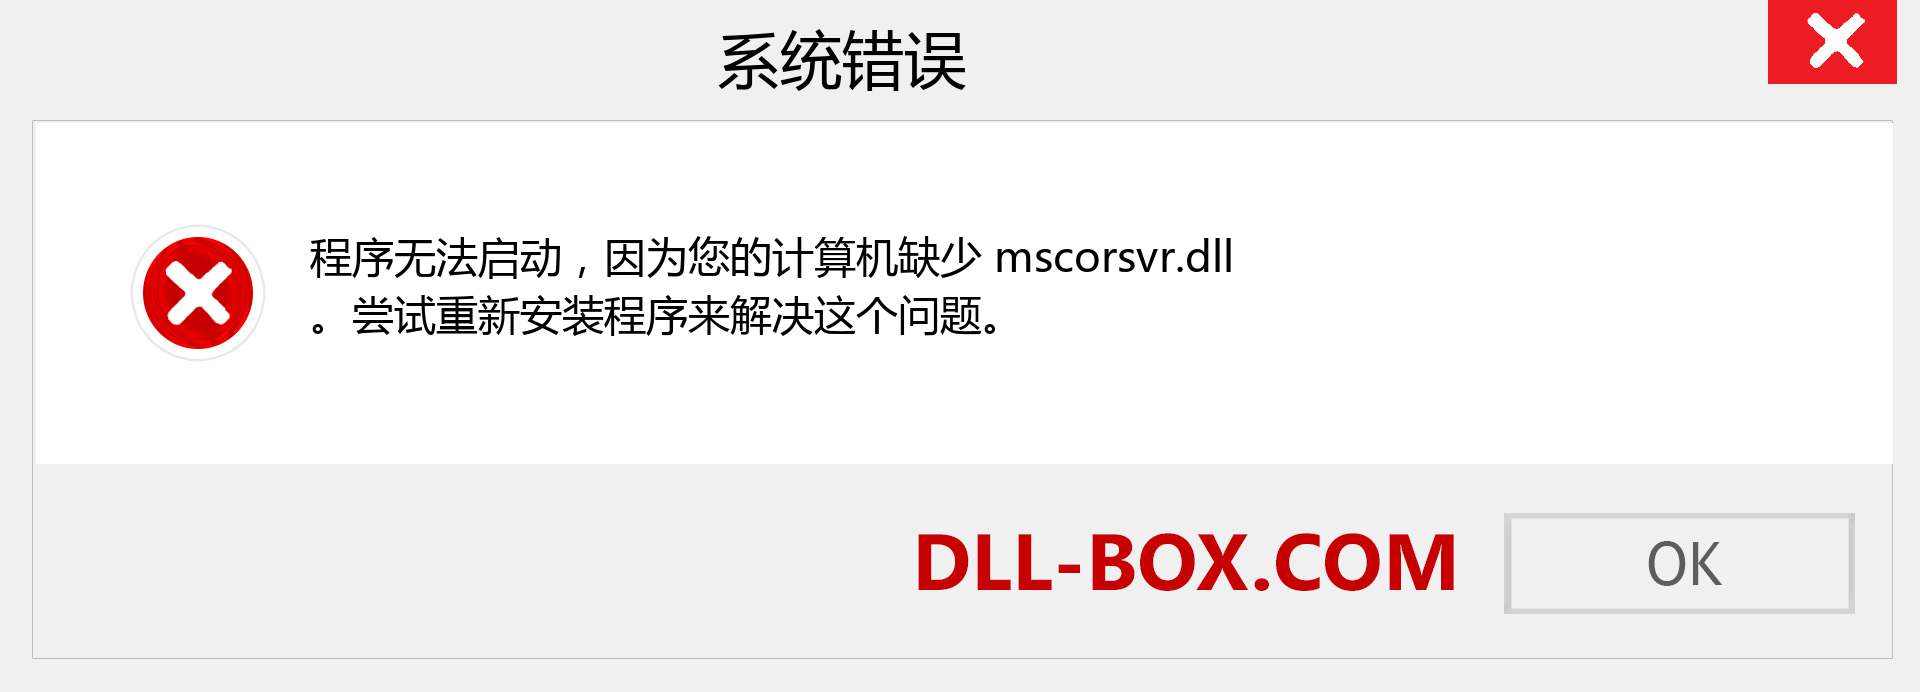 mscorsvr.dll 文件丢失？。 适用于 Windows 7、8、10 的下载 - 修复 Windows、照片、图像上的 mscorsvr dll 丢失错误